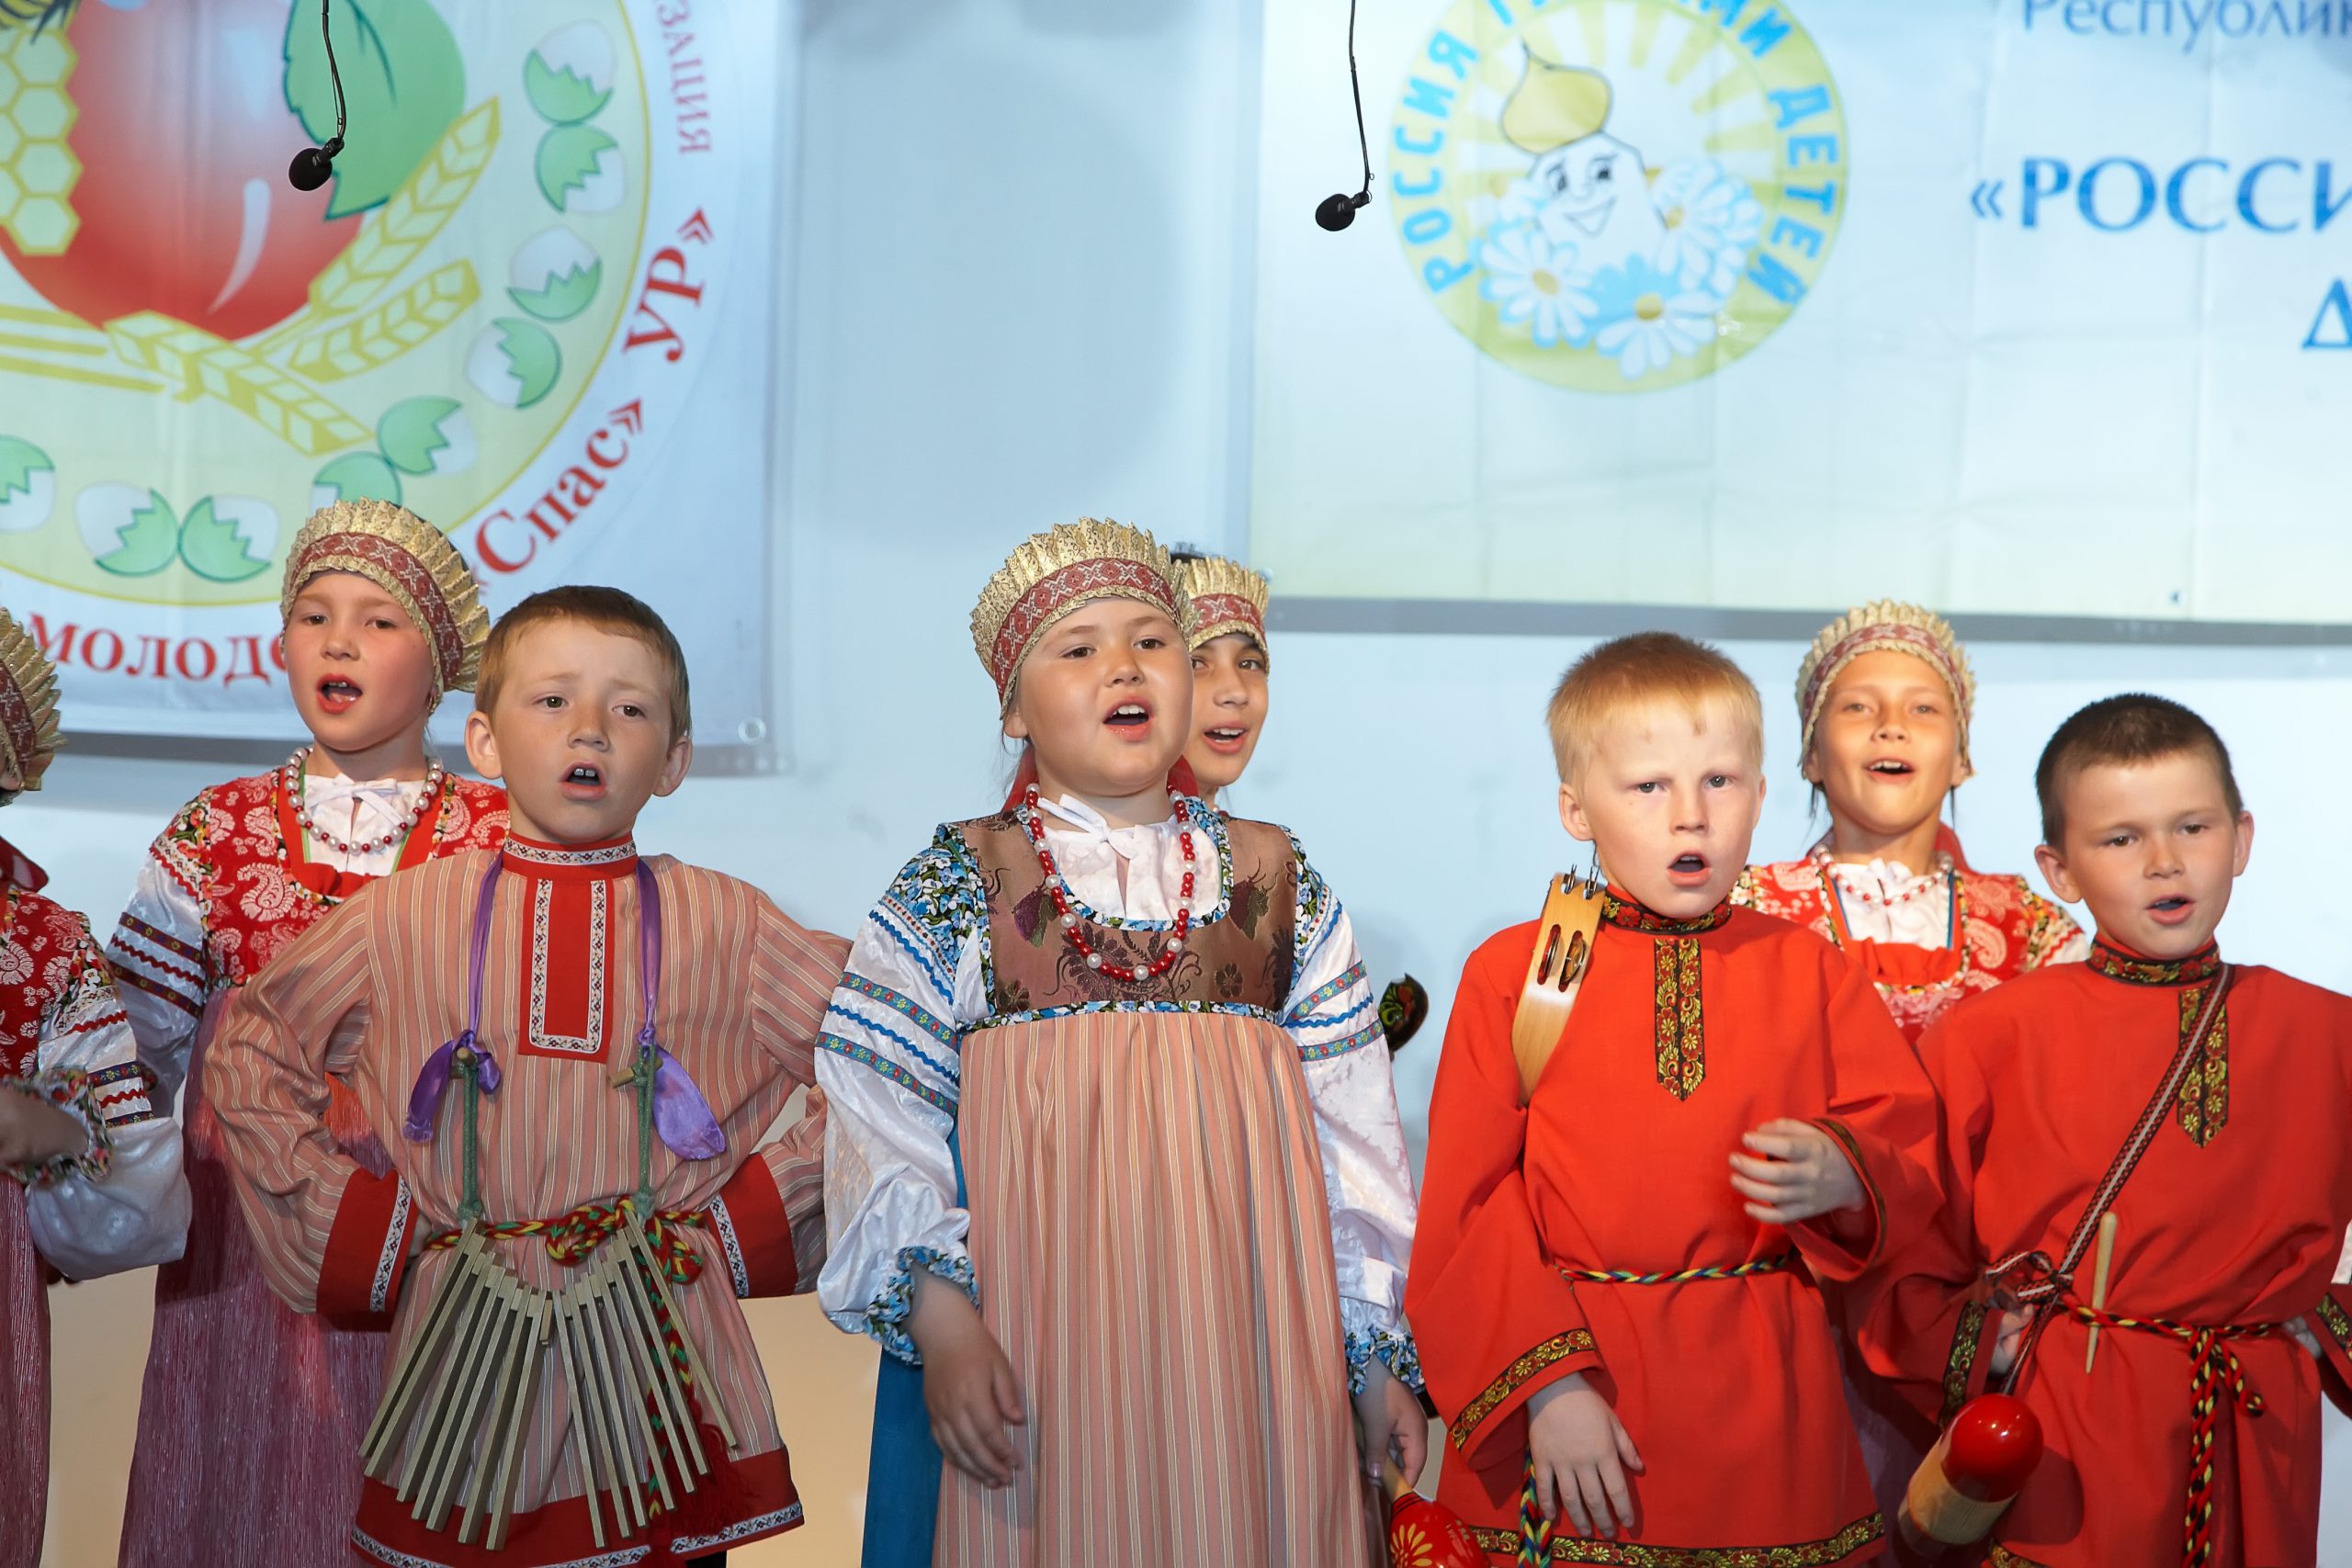 VIII Республиканский творческий конкурс «Россия глазами детей»